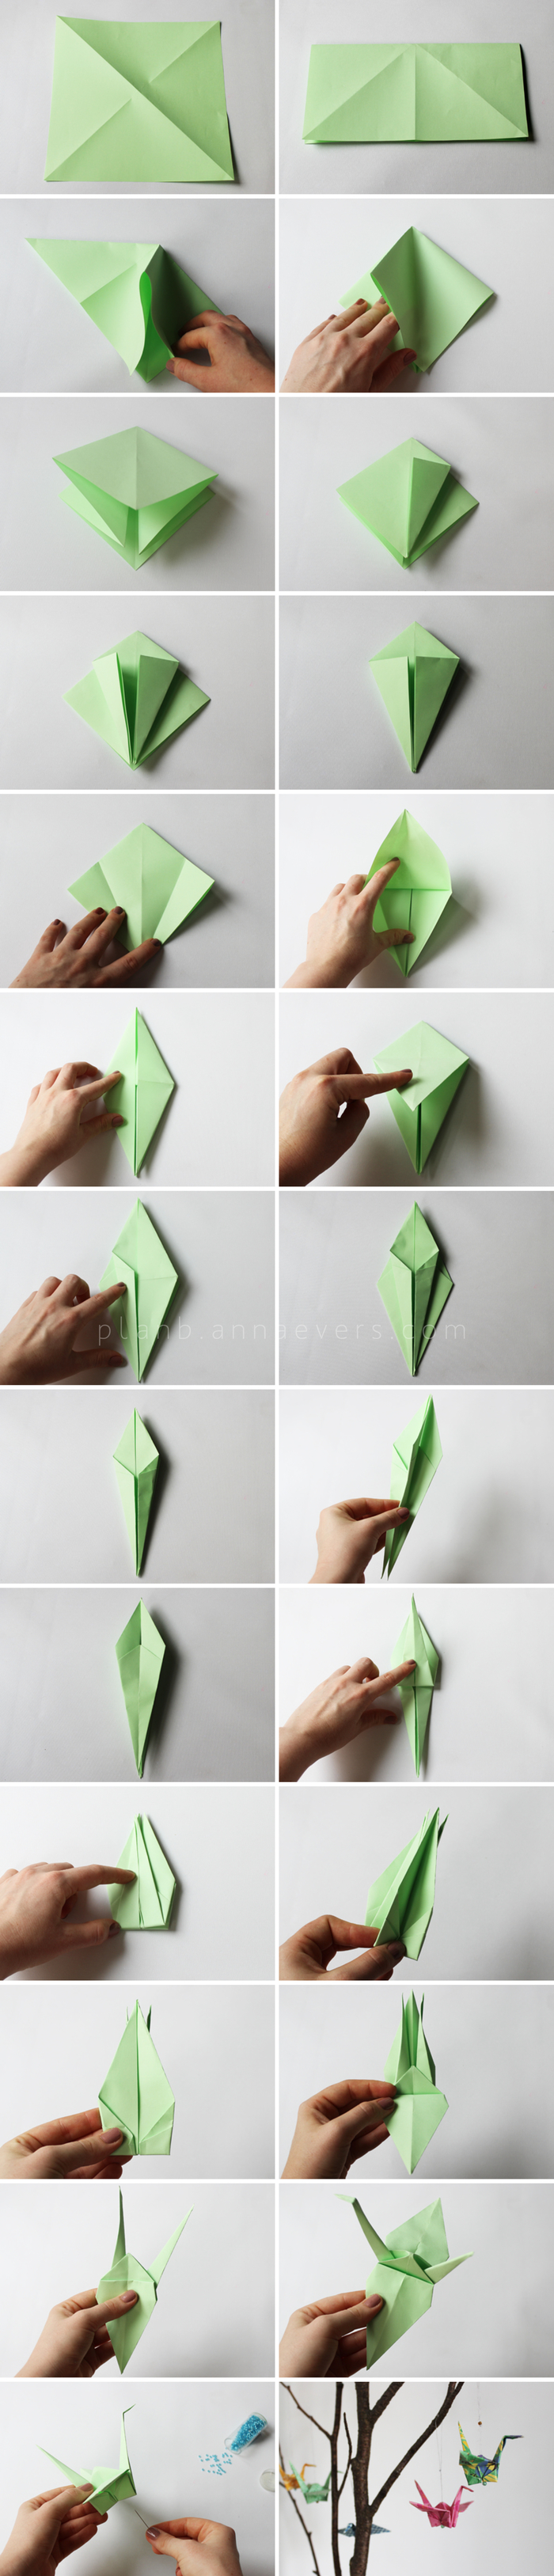 instructions de pliage origami d une grue en papier pour réaliser une jolie suspension origami